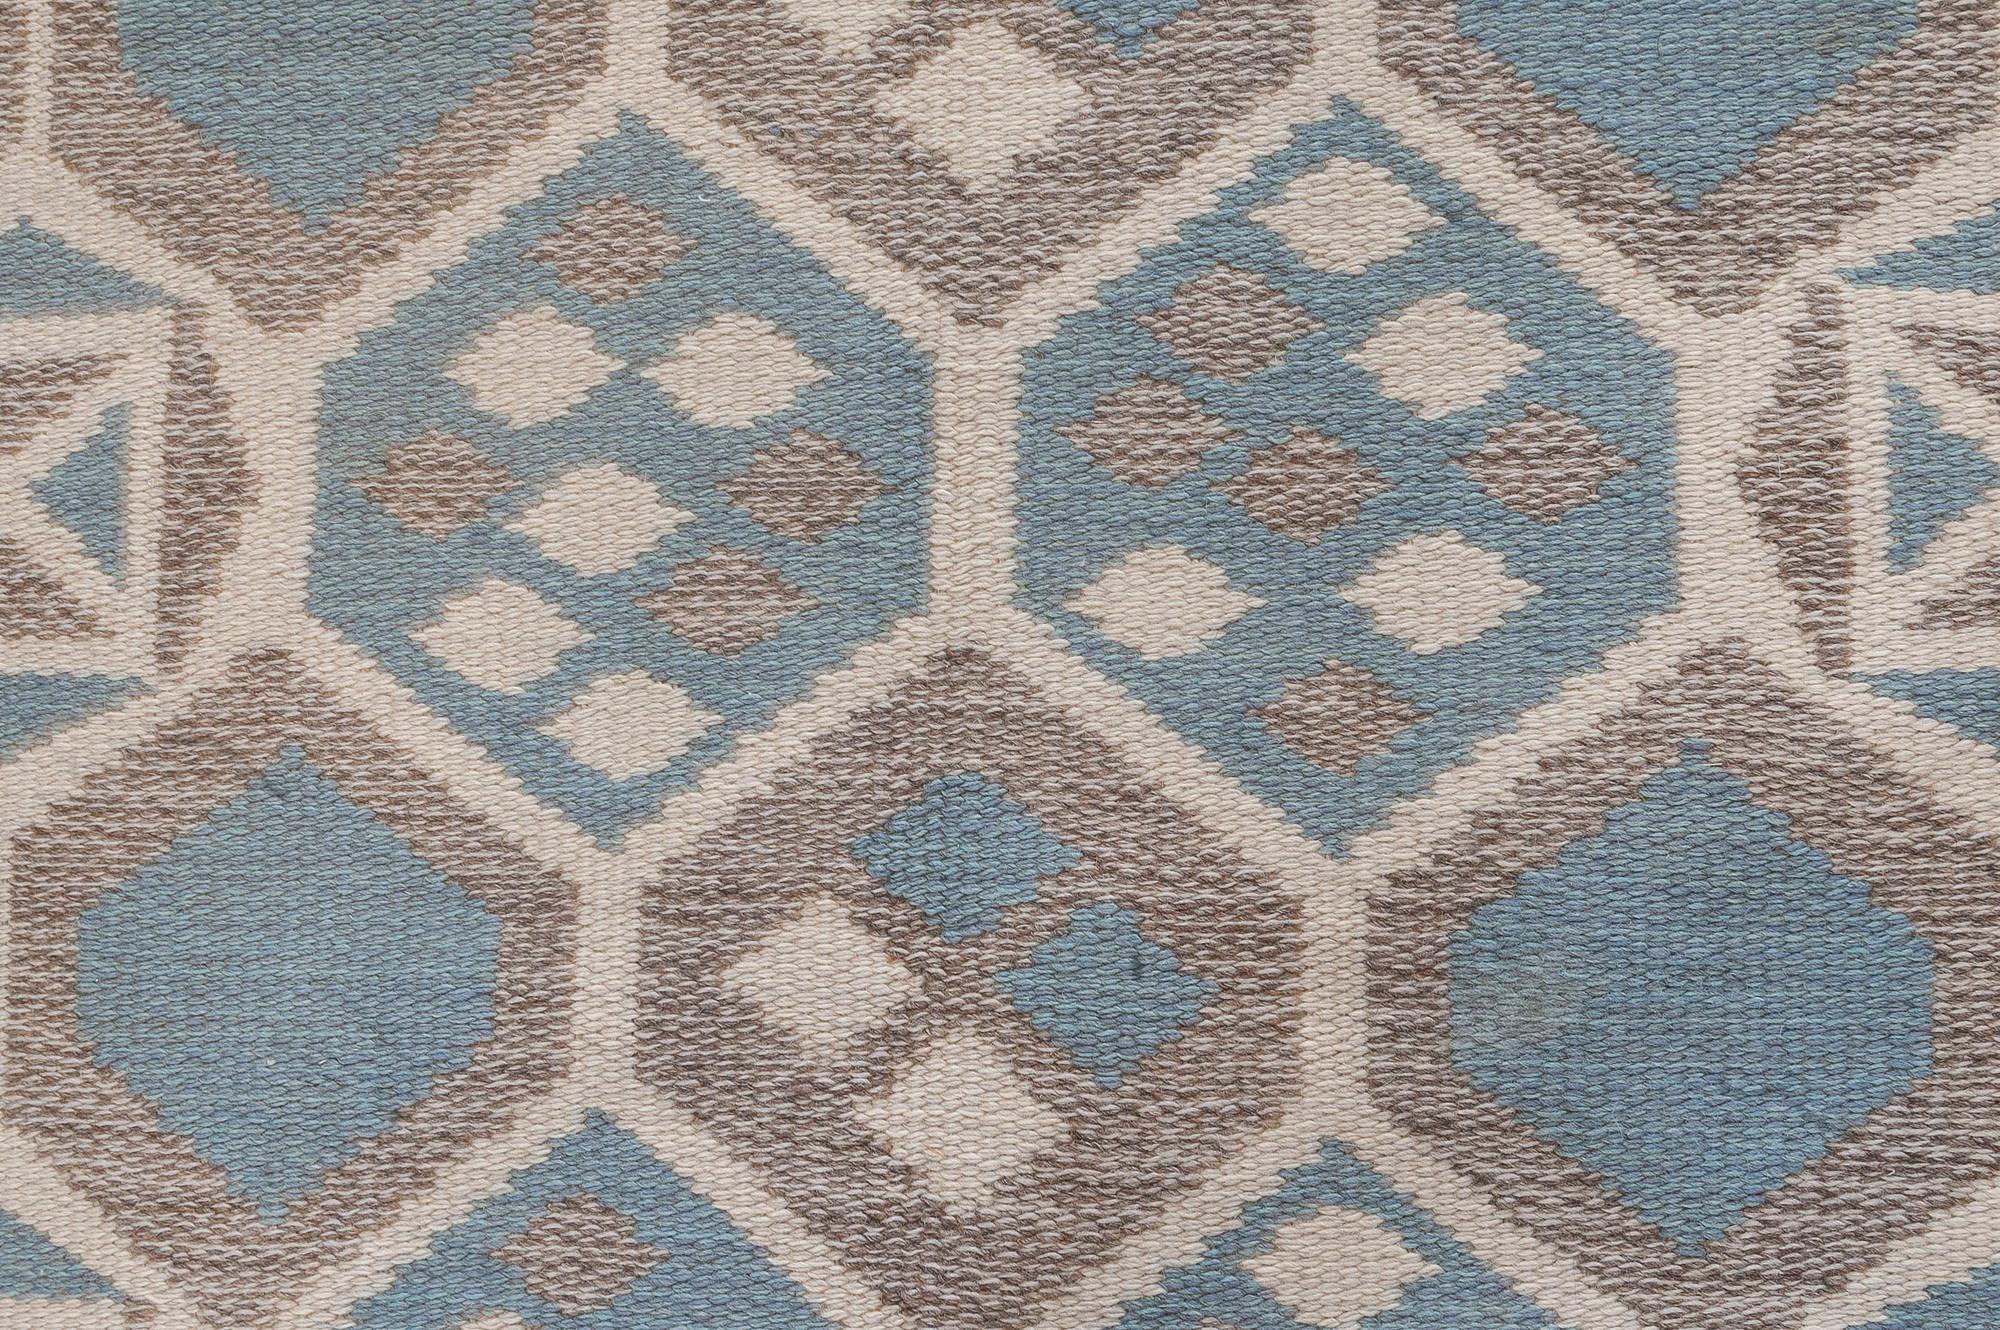 Tapis scandinave géométrique en laine fait main du milieu du siècle dernier
Taille : 5'4